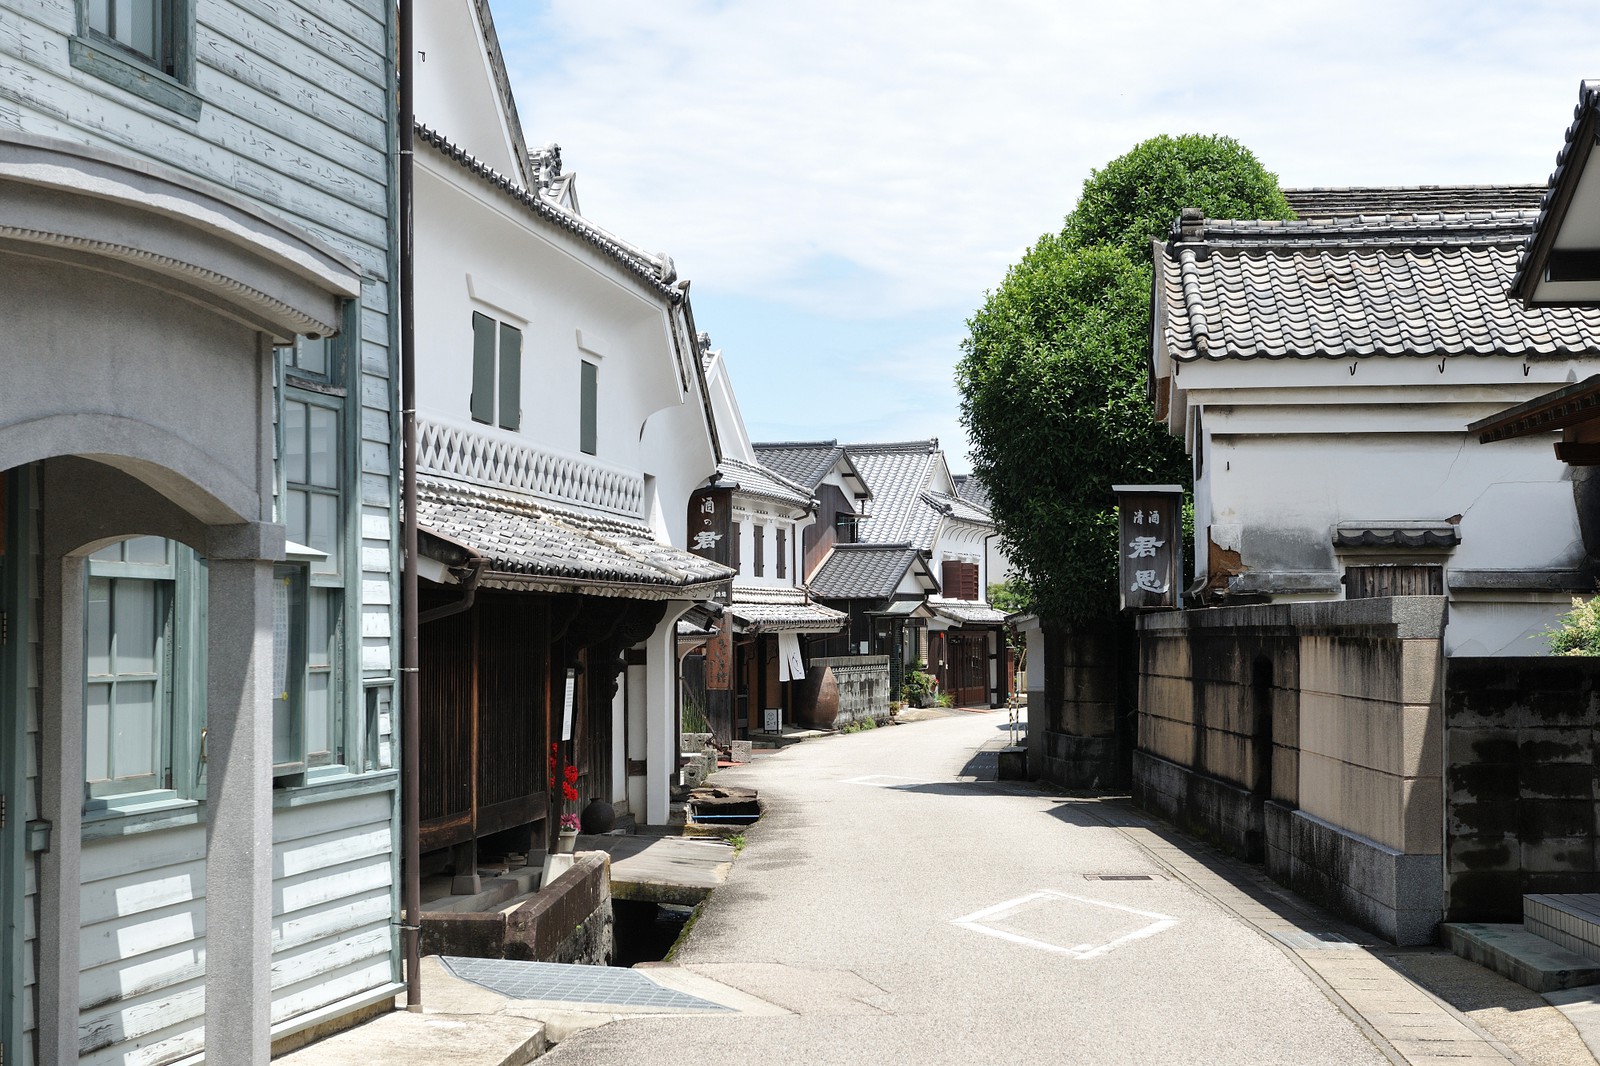 佐賀県鹿島市の浜通り。古くから酒造りをする家が多く、白壁土蔵の伝統的な建物が多く残されています。